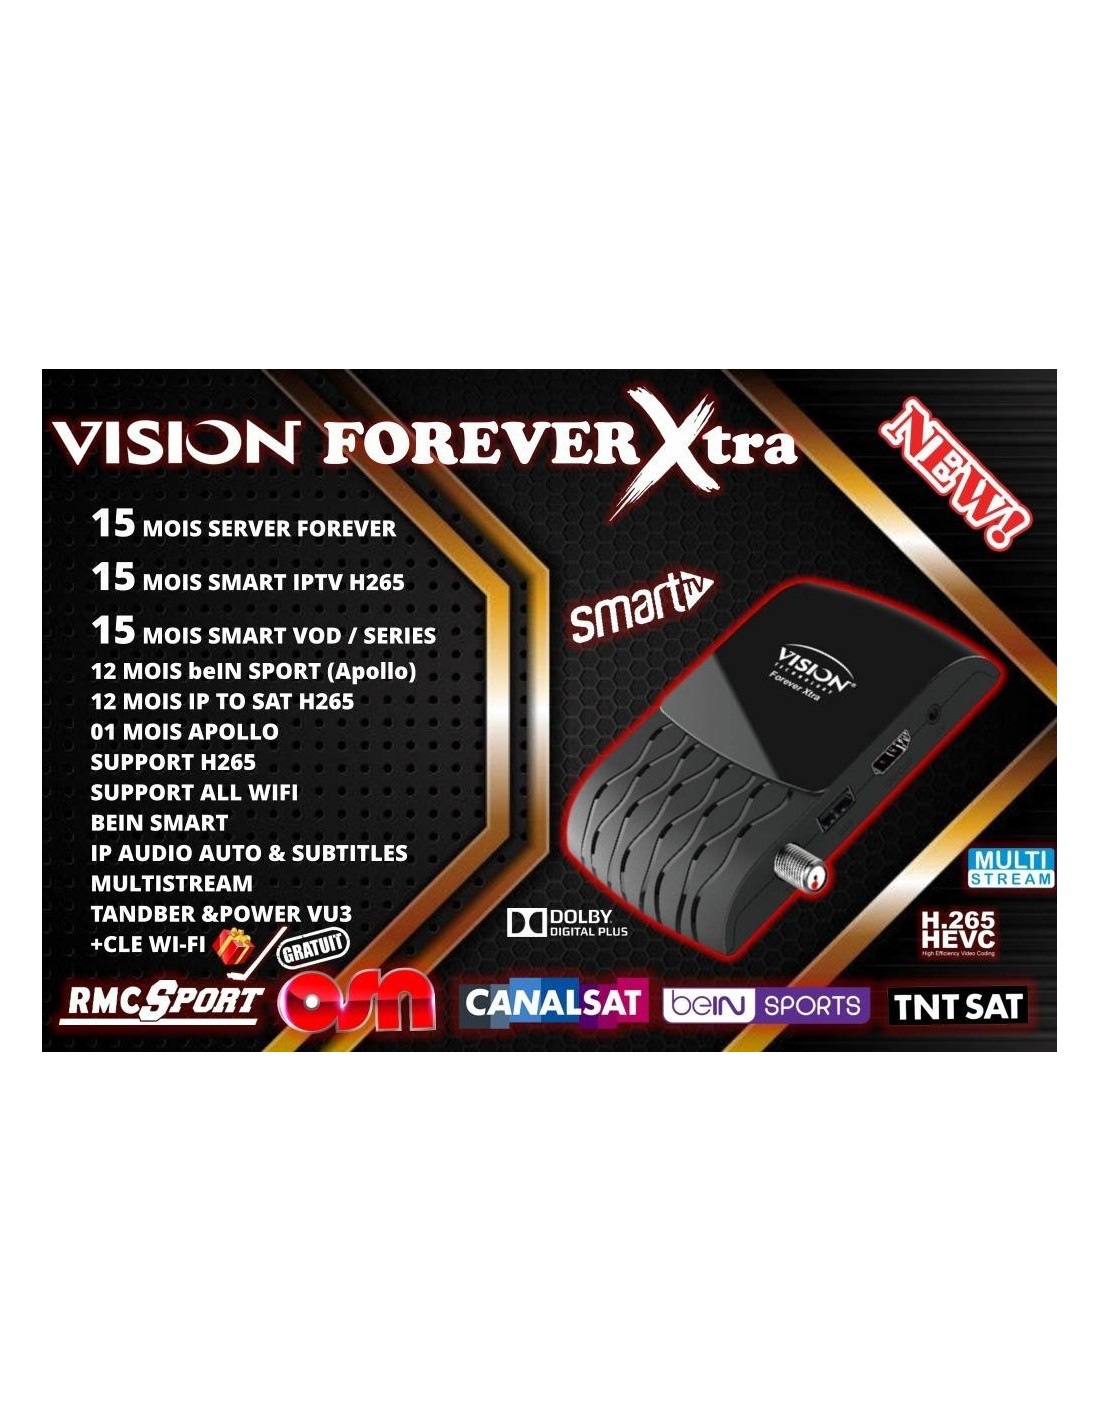 Vision forever xtra recepteur numérique avec serveur et iptv - Noir